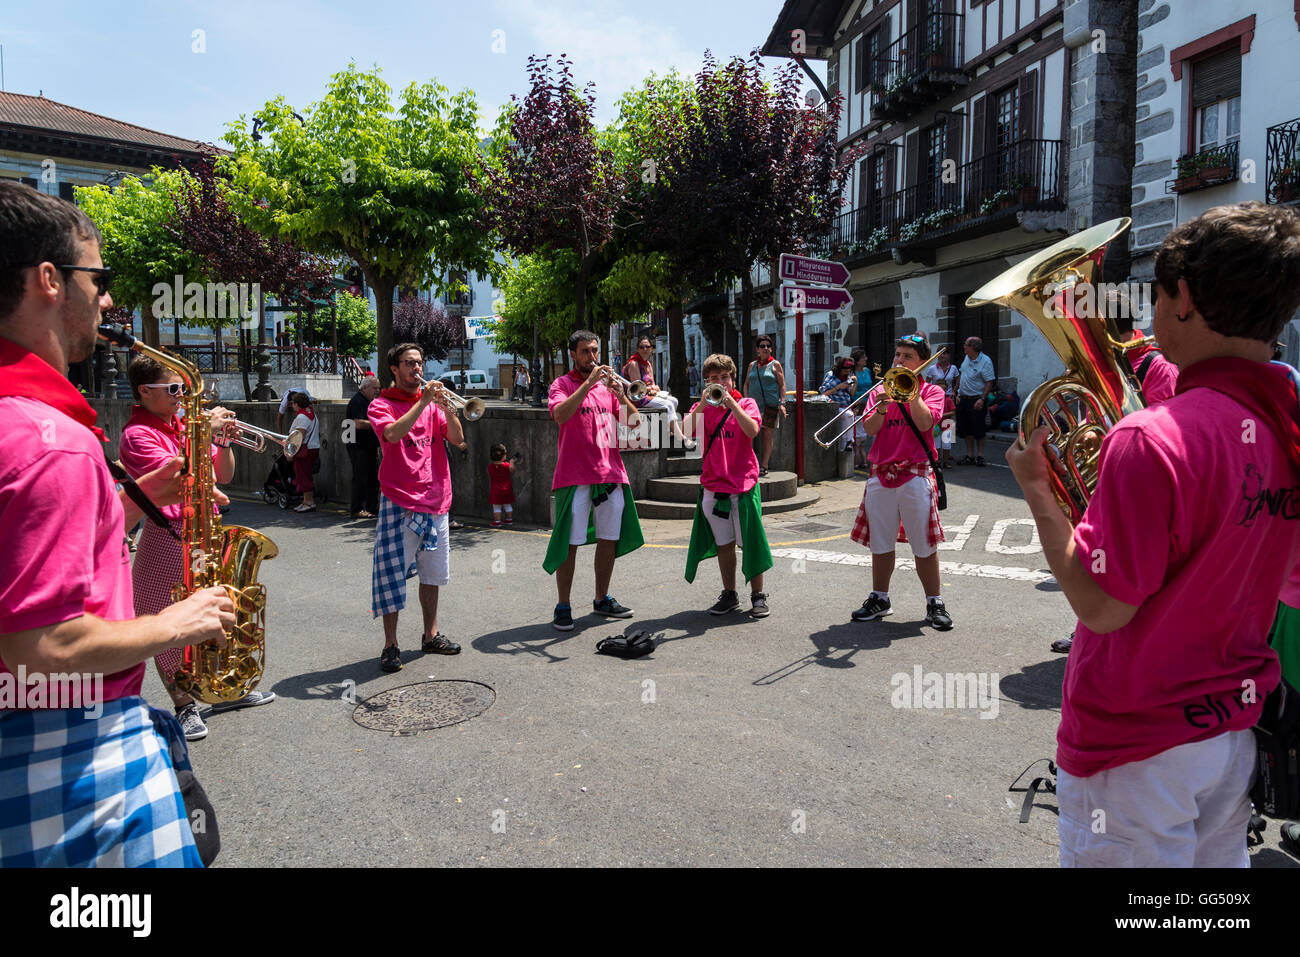 Las celebraciones tradicionales en la calle, Lesaka, Navarra, Norte de España Foto de stock